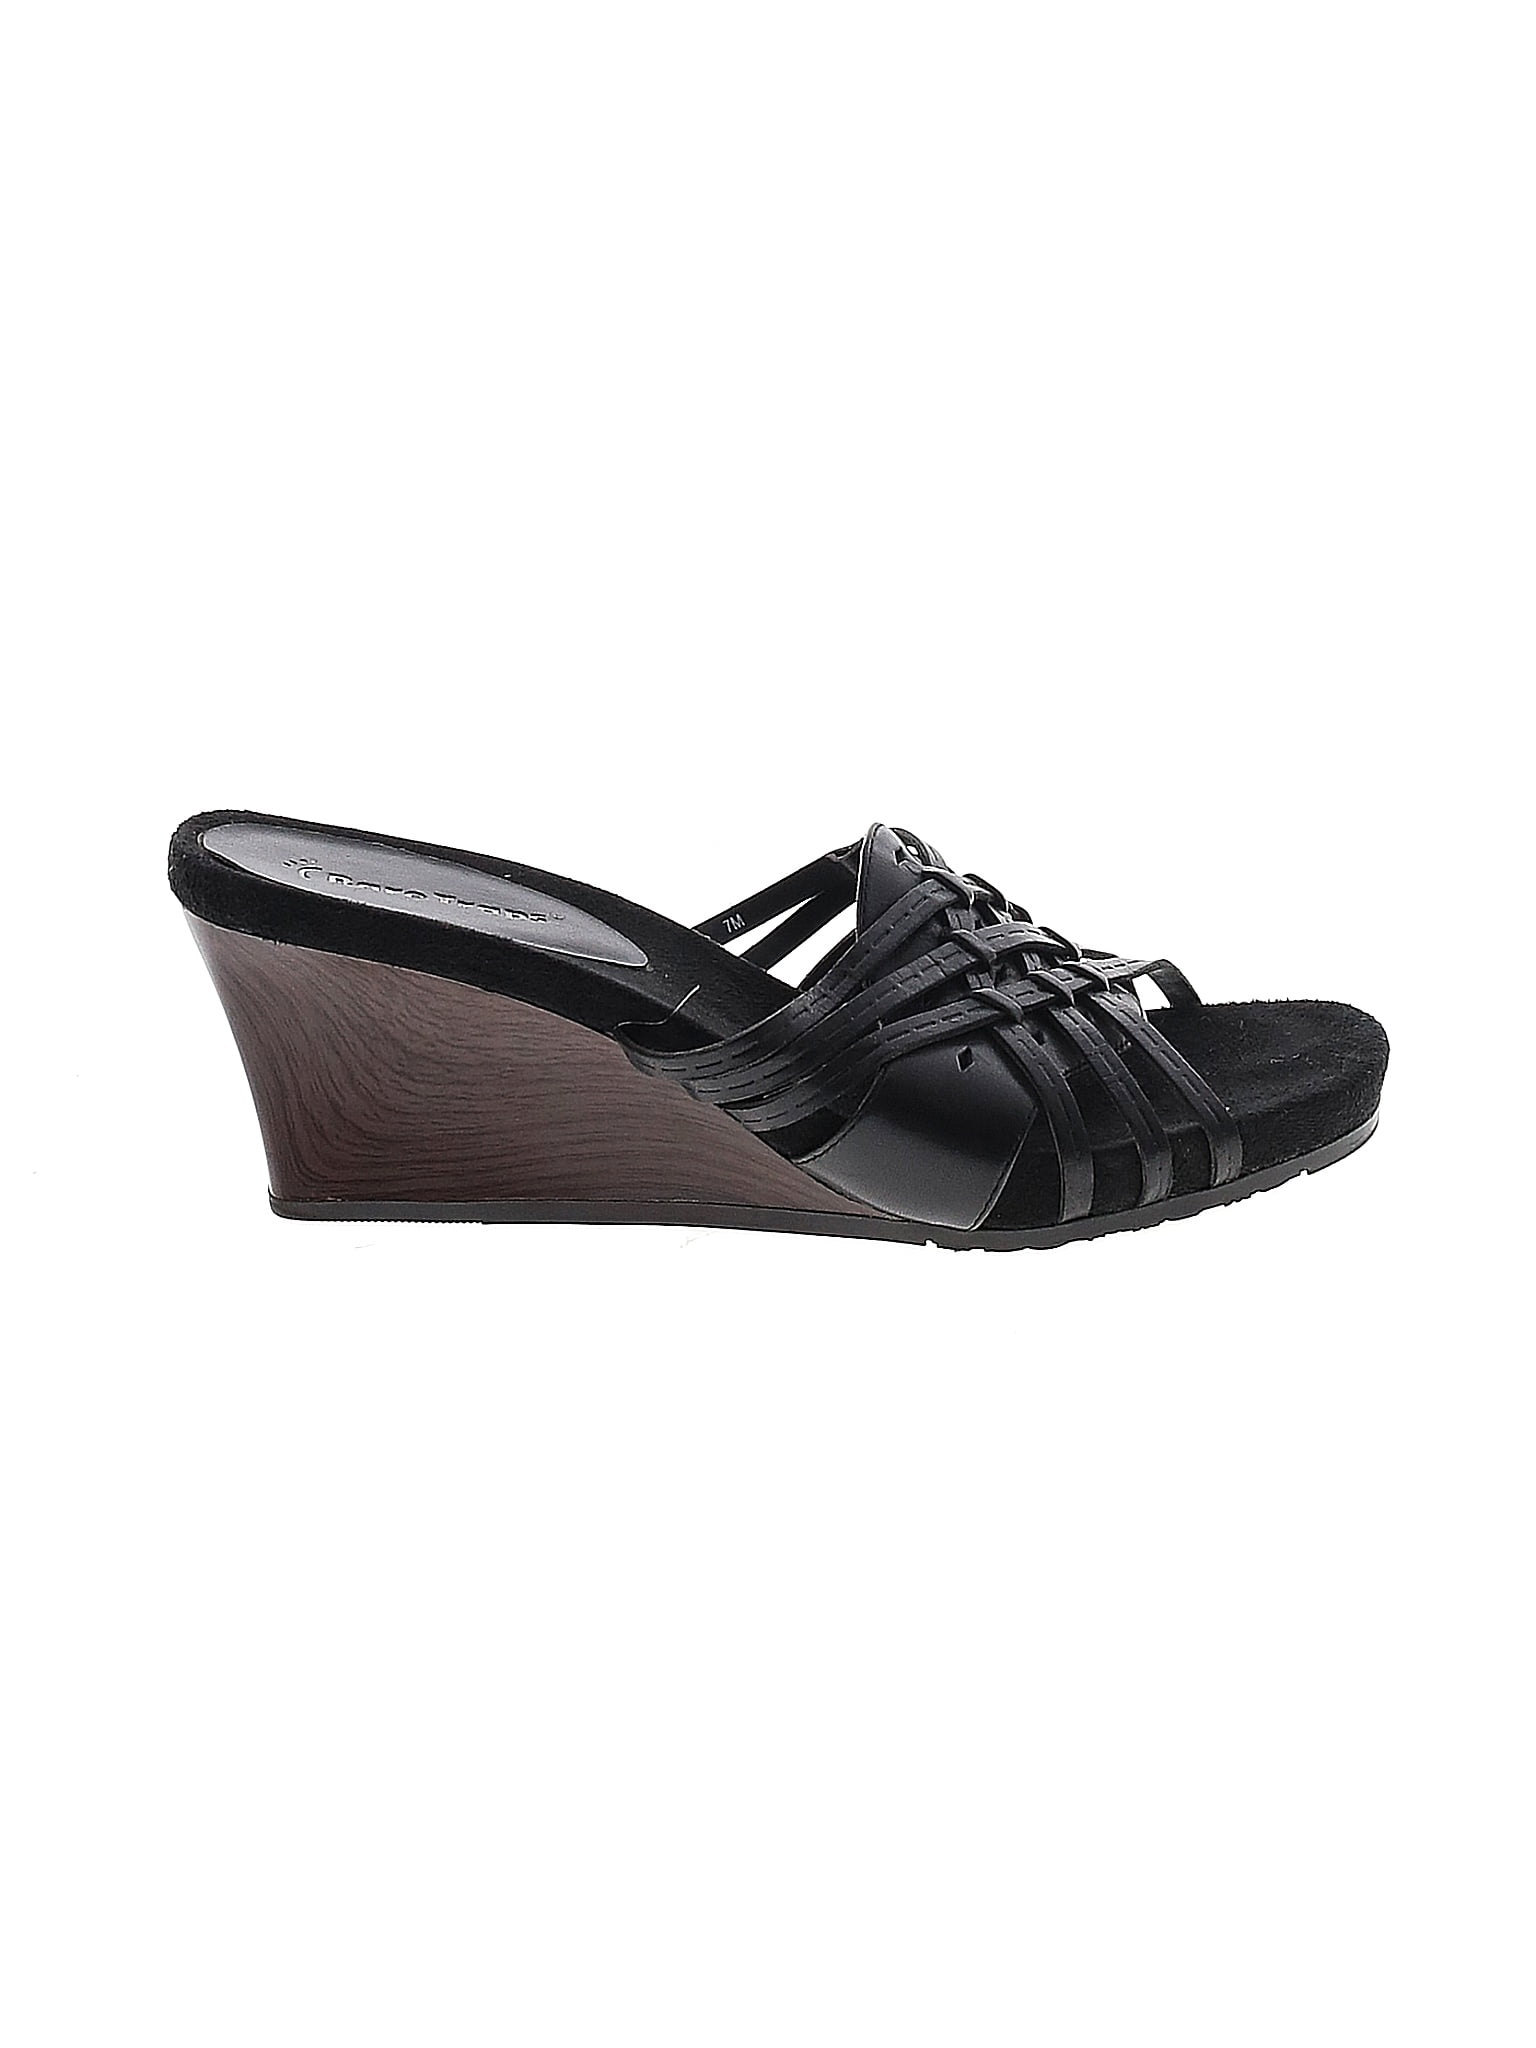 Bare Traps Black Sandals Size 7 - 44% off | thredUP